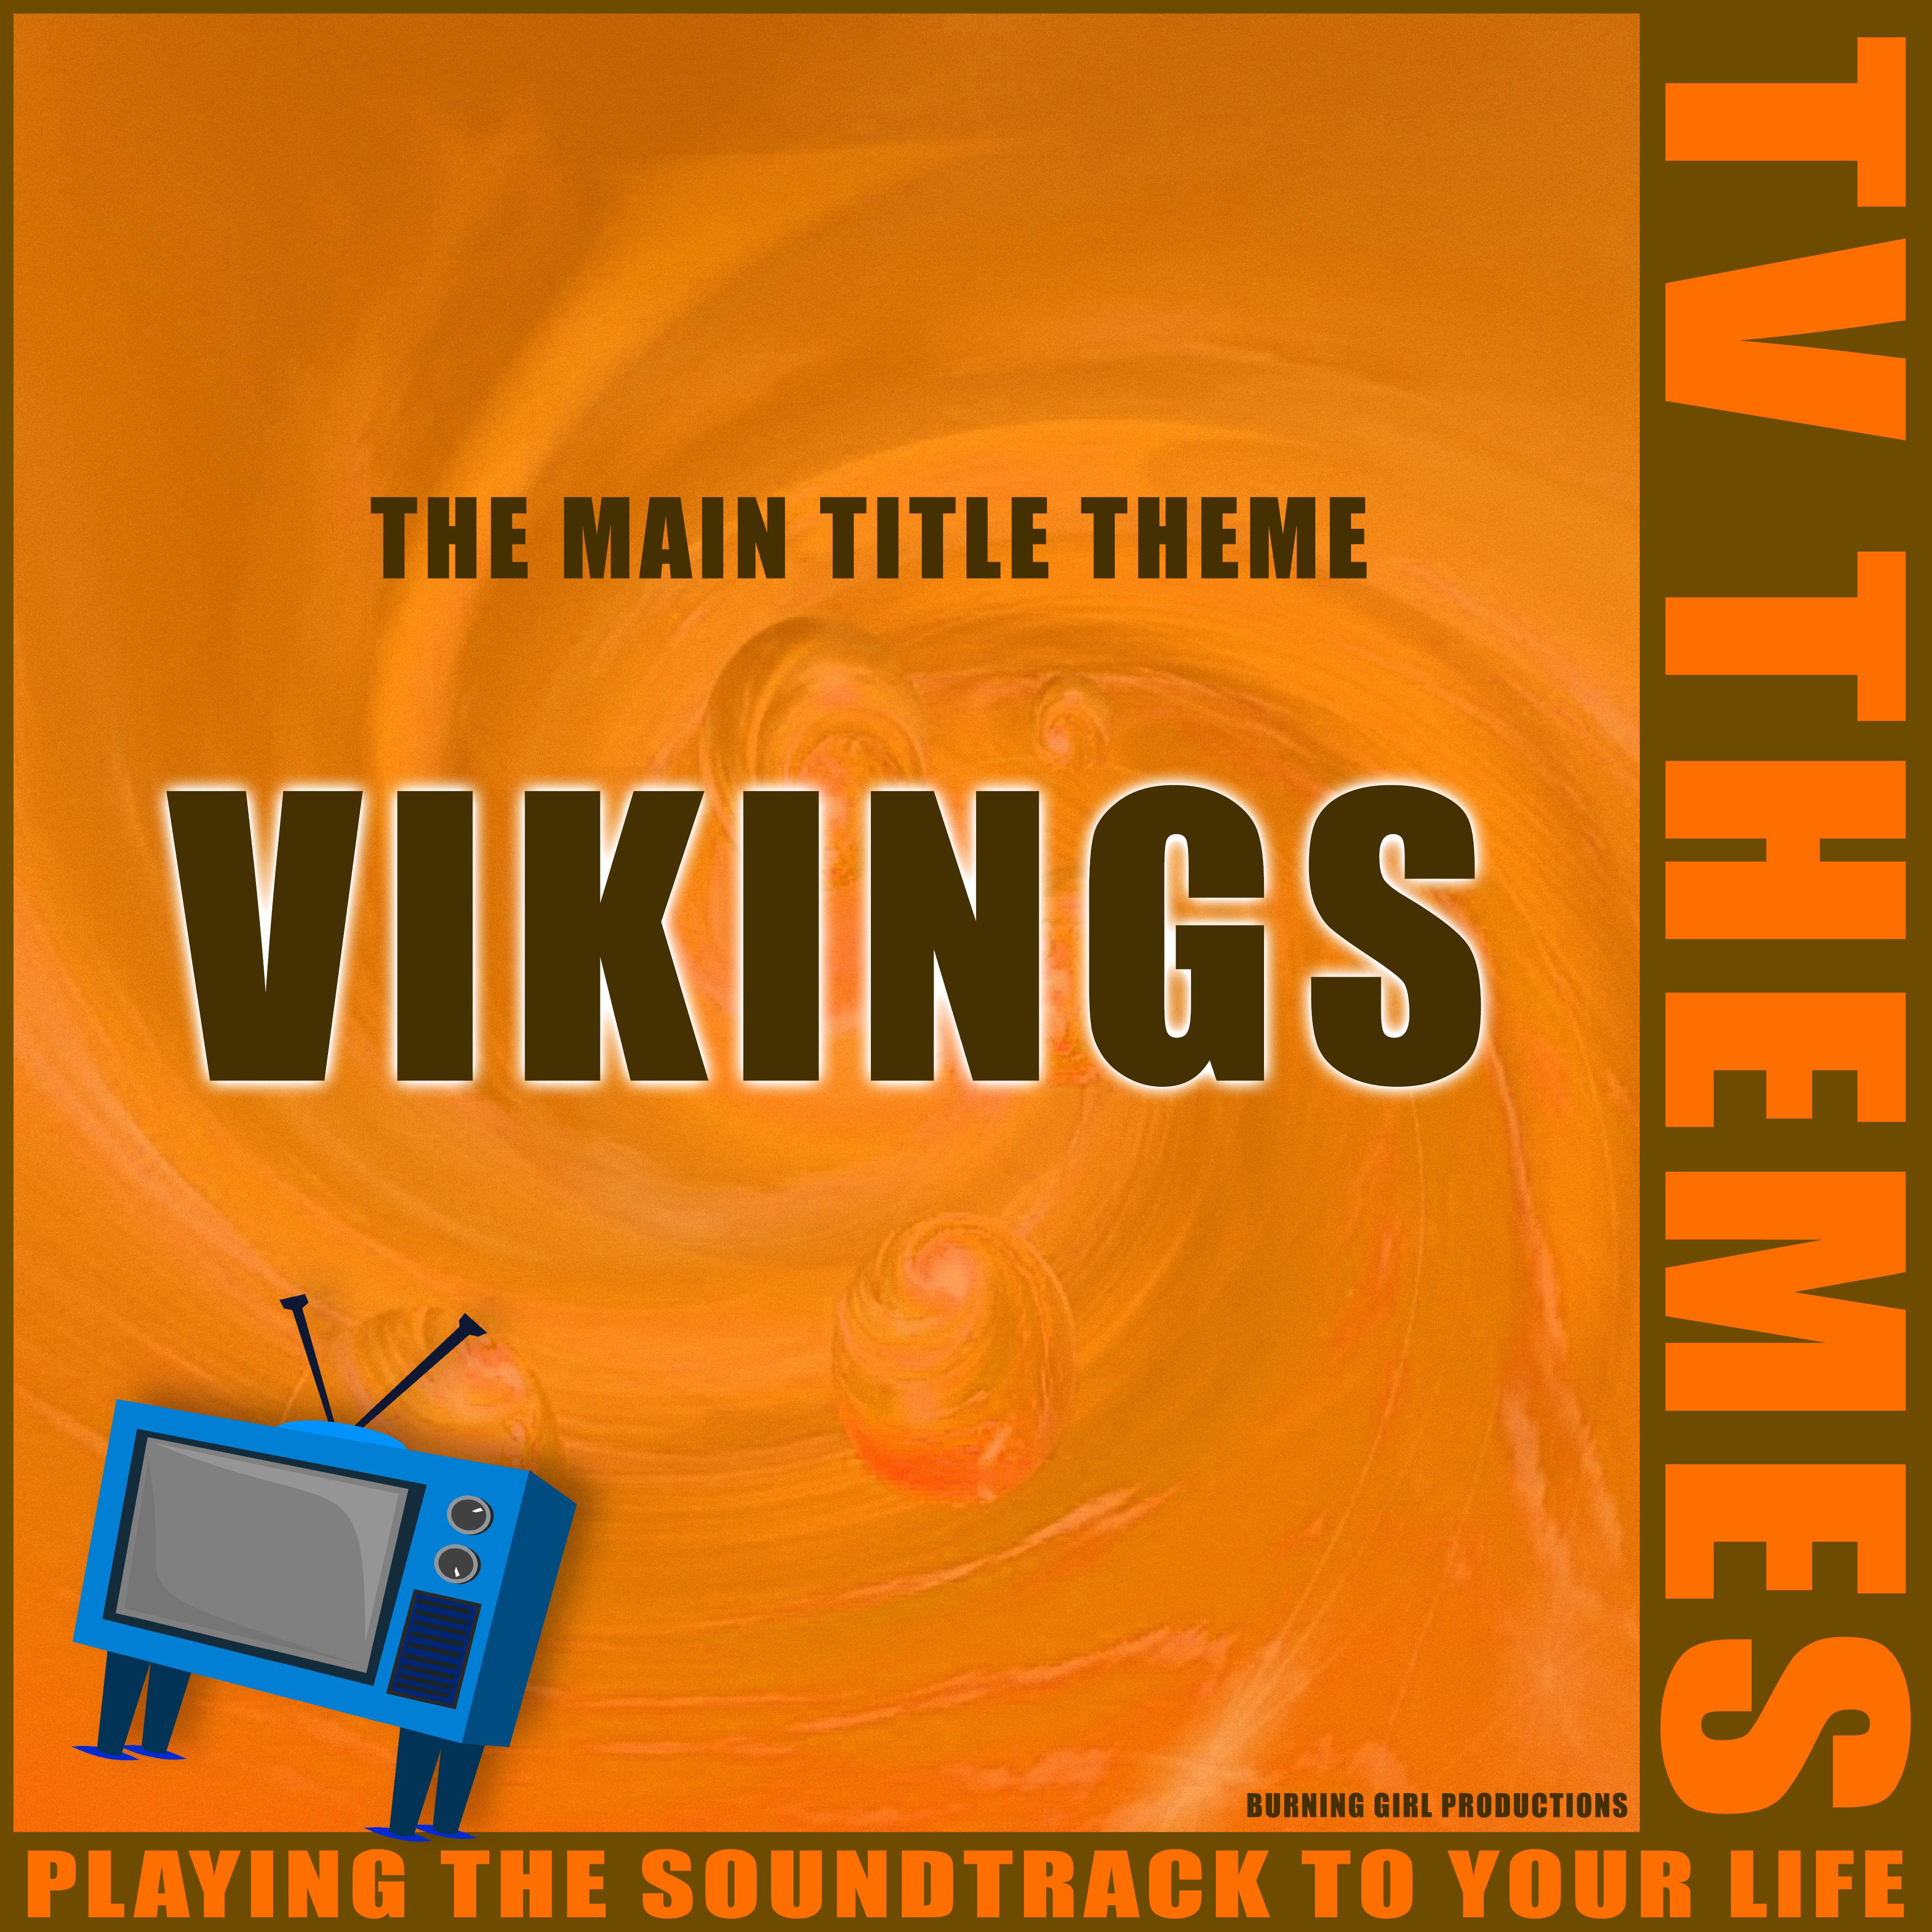 The Main Title Theme - Vikings